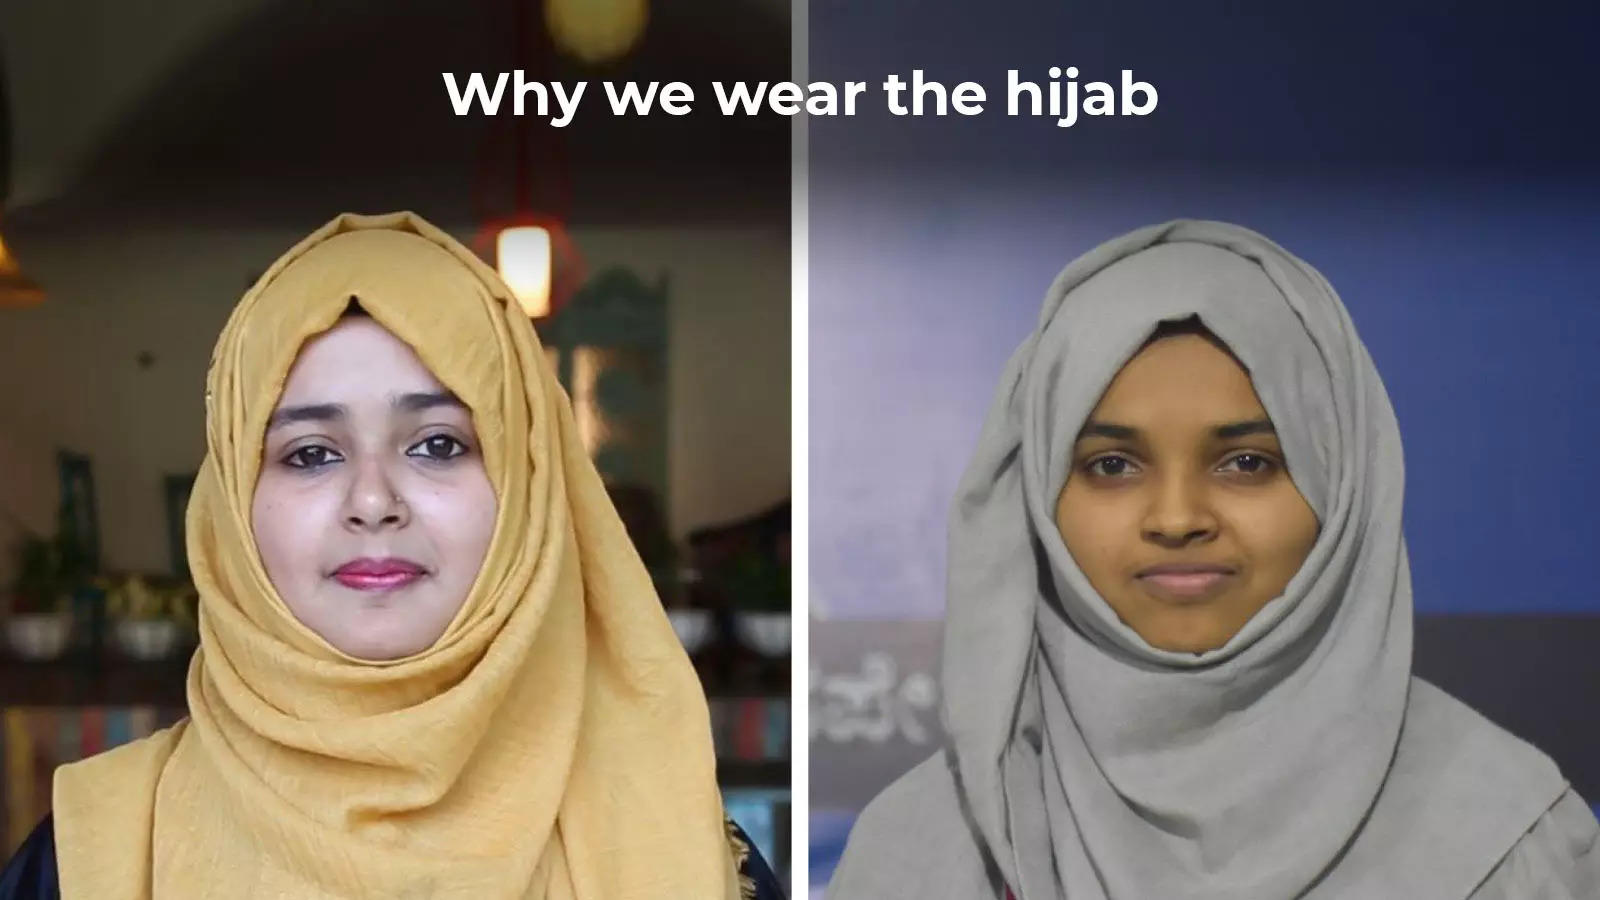 wear hijab': Two young Muslim women ...